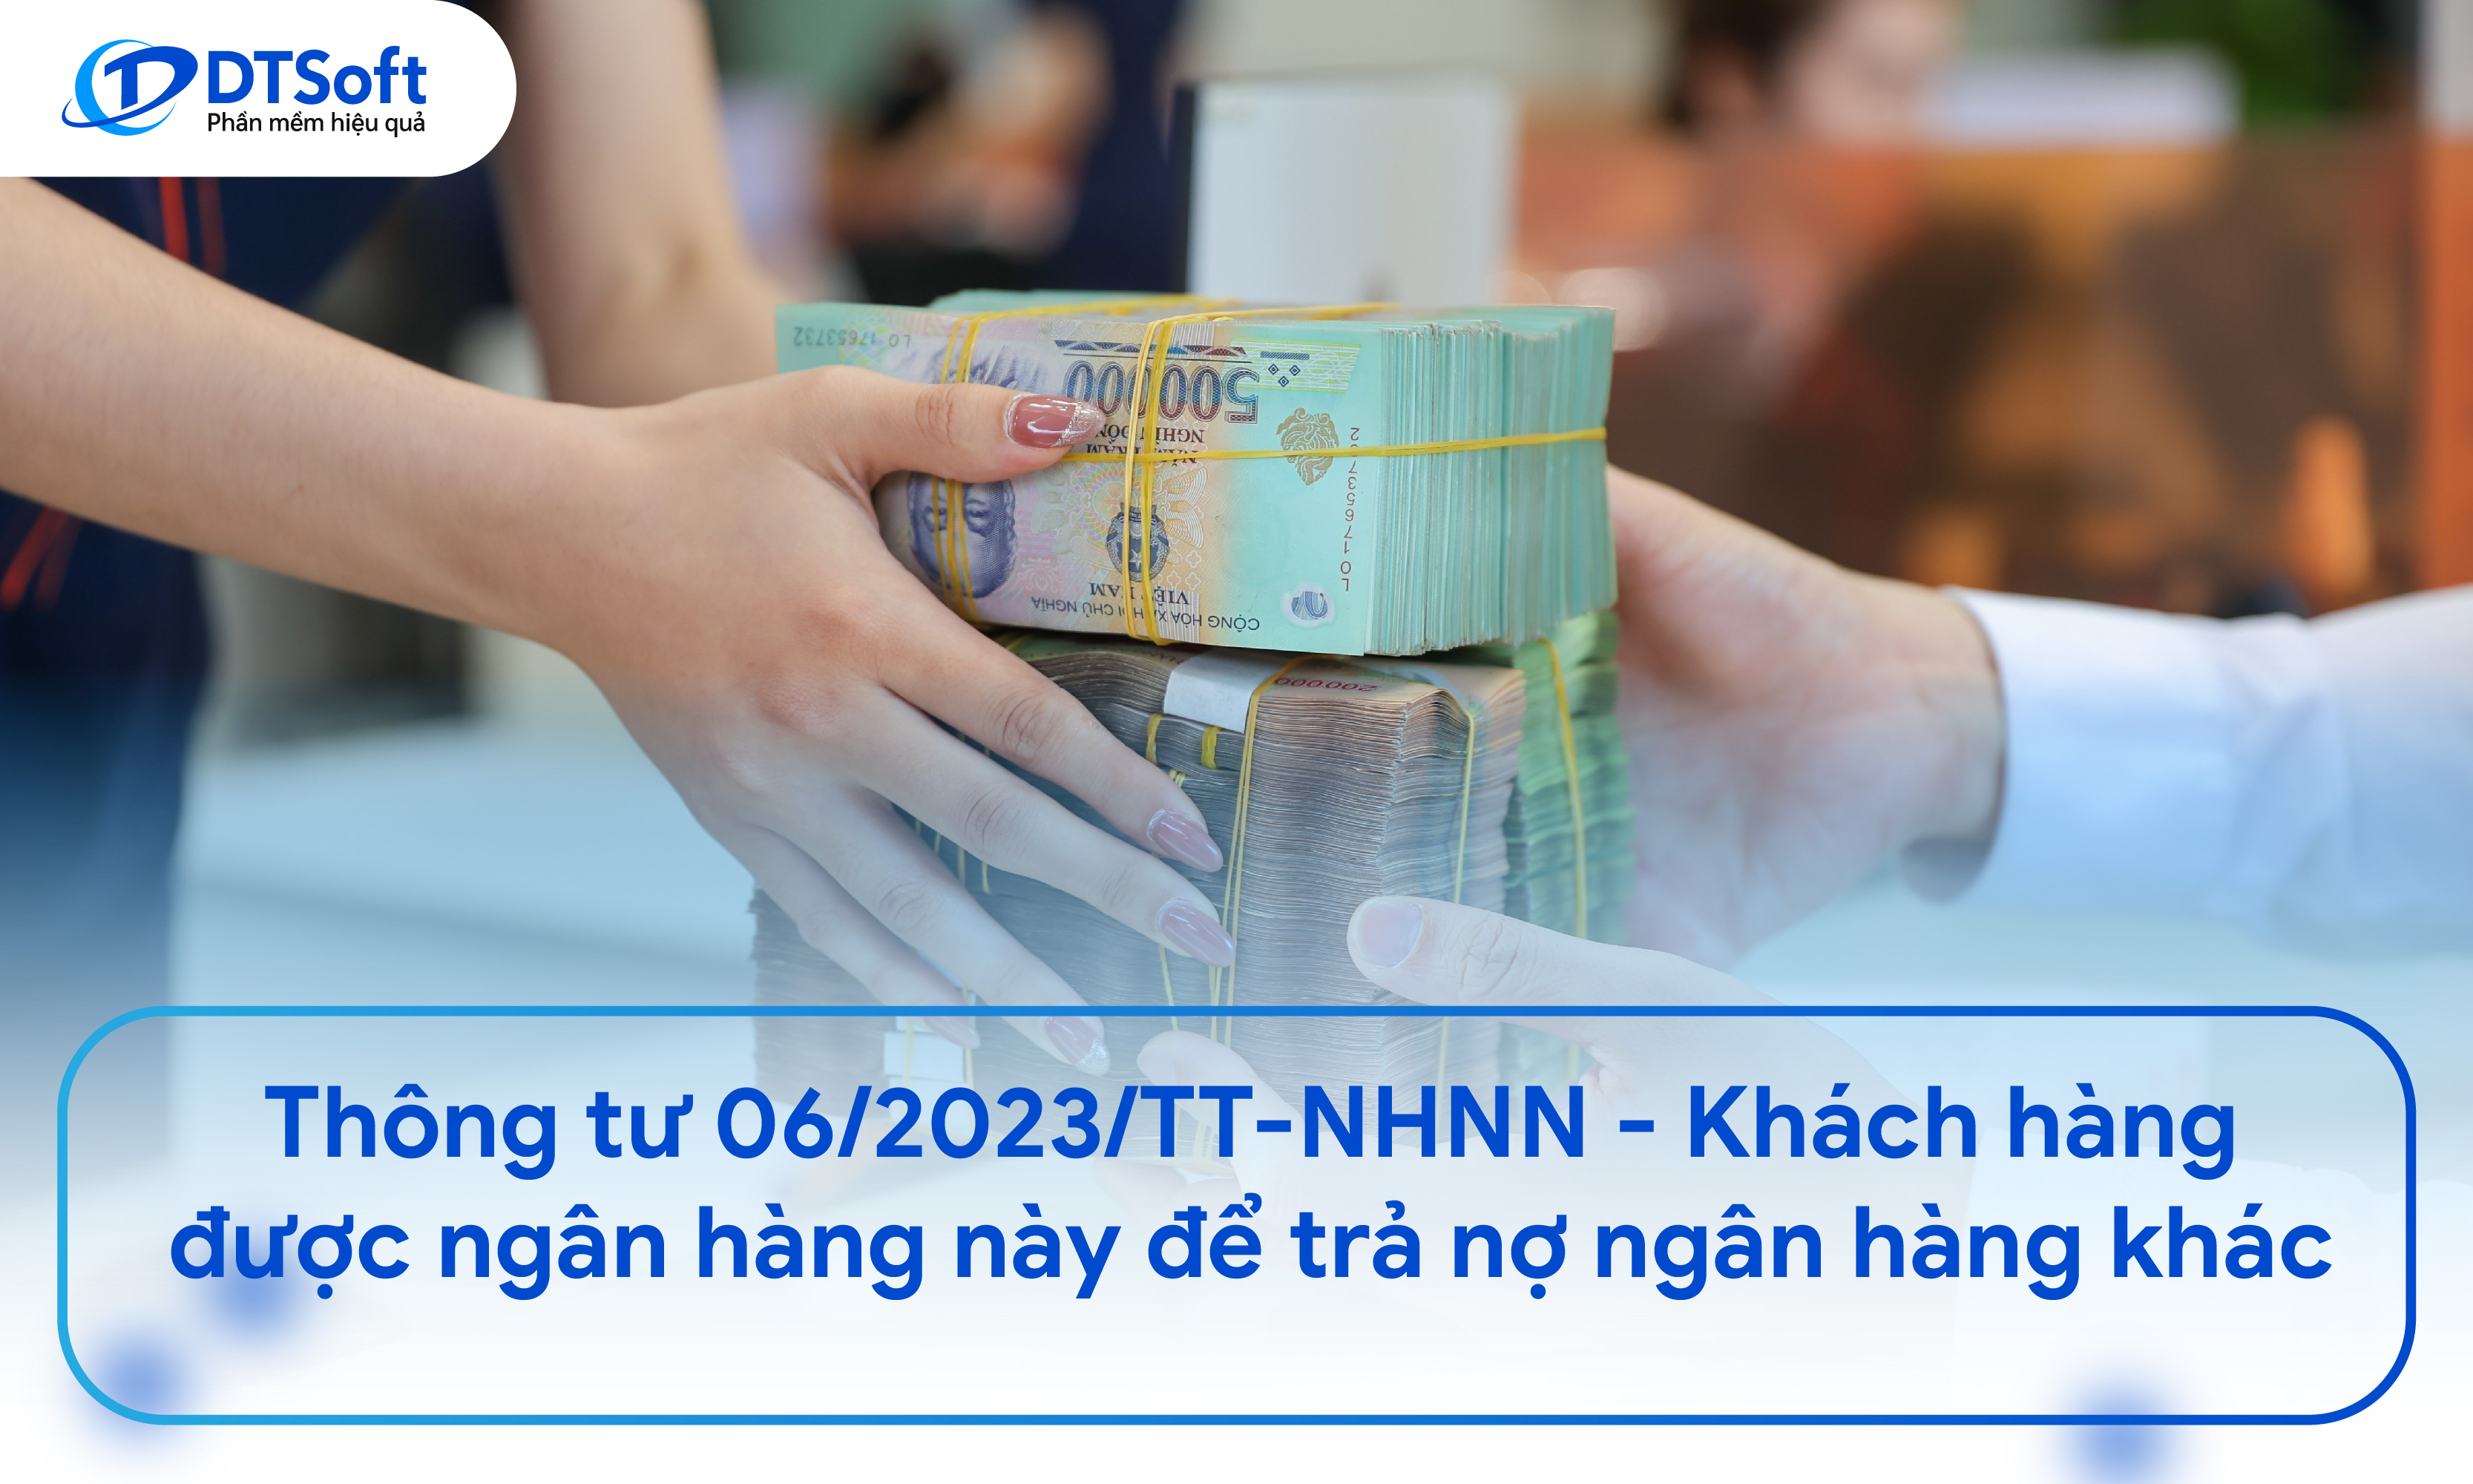 Thông tư 06/2023/TT-NHNN - Khách hàng được ngân hàng này để trả nợ ngân hàng khác